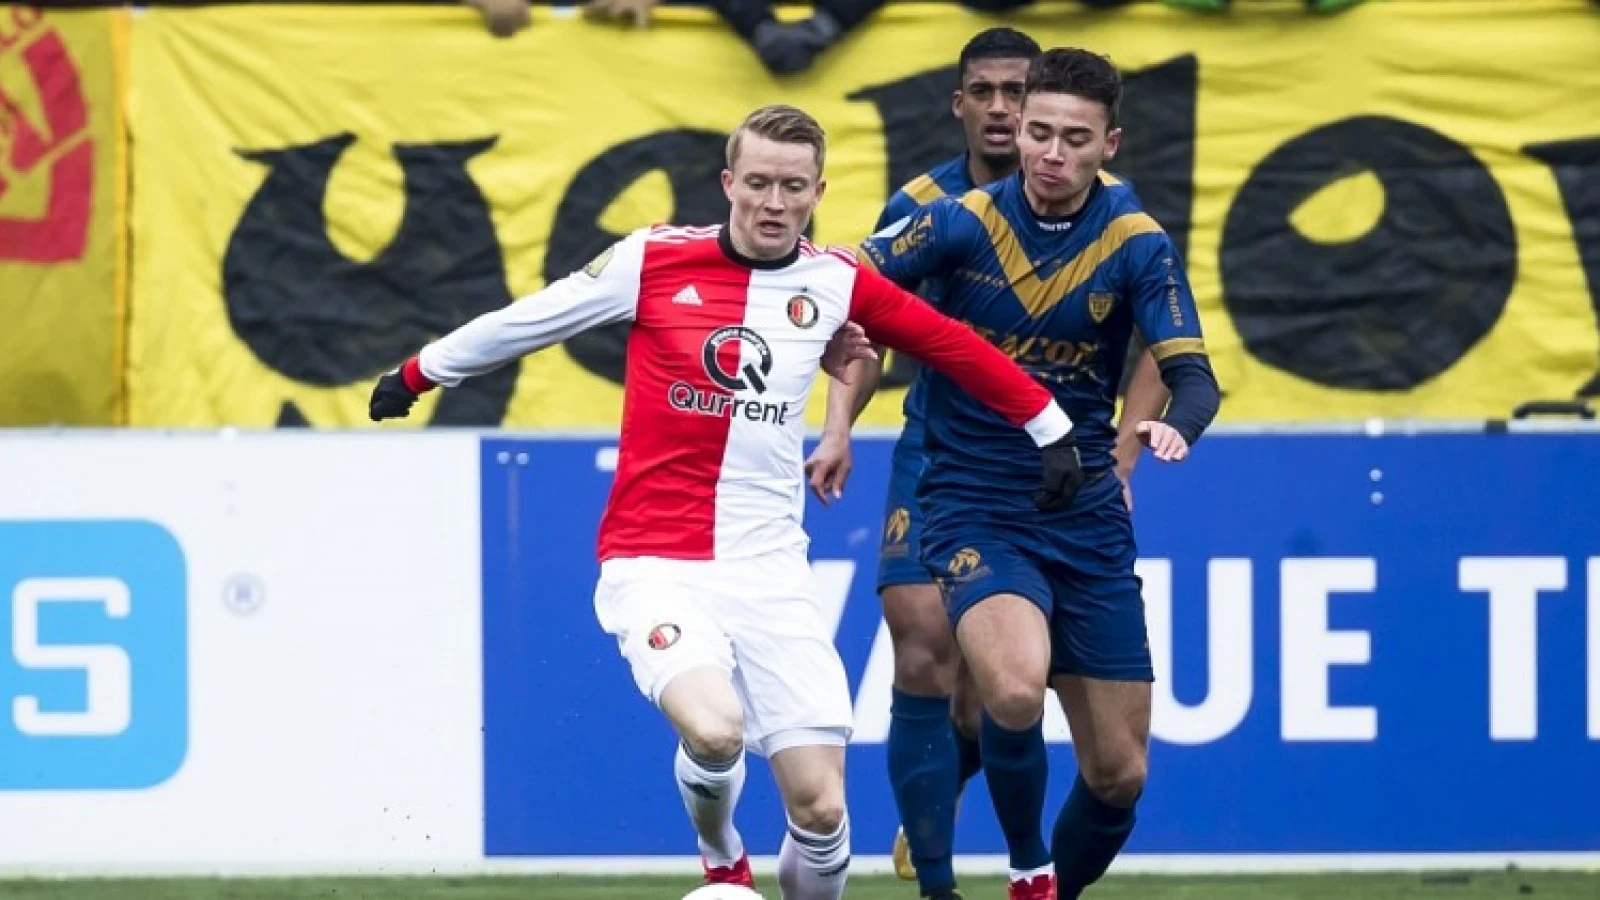 LIVE | VVV-Venlo - Feyenoord 1-0 | Einde wedstrijd